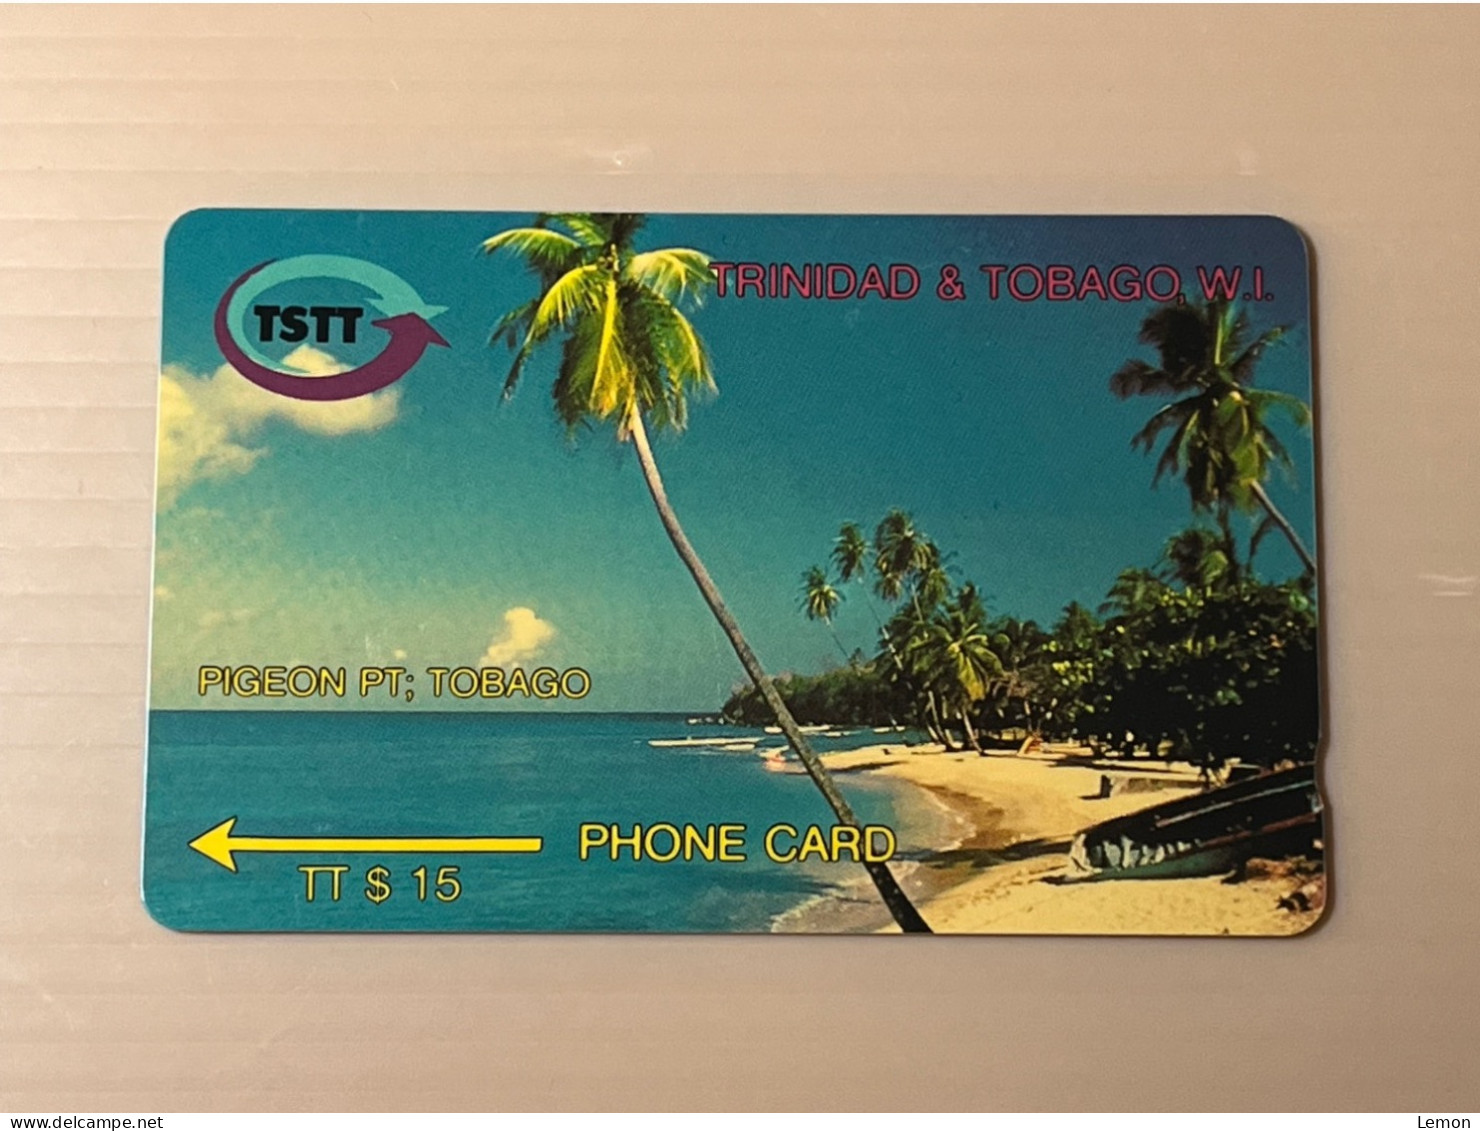 (No Control Number) Unused Trinidad & Tobago Telecom GPT Phonecard -  Pigeon Pt; Tobago, Set Of 1 Unused Card - Trinidad & Tobago